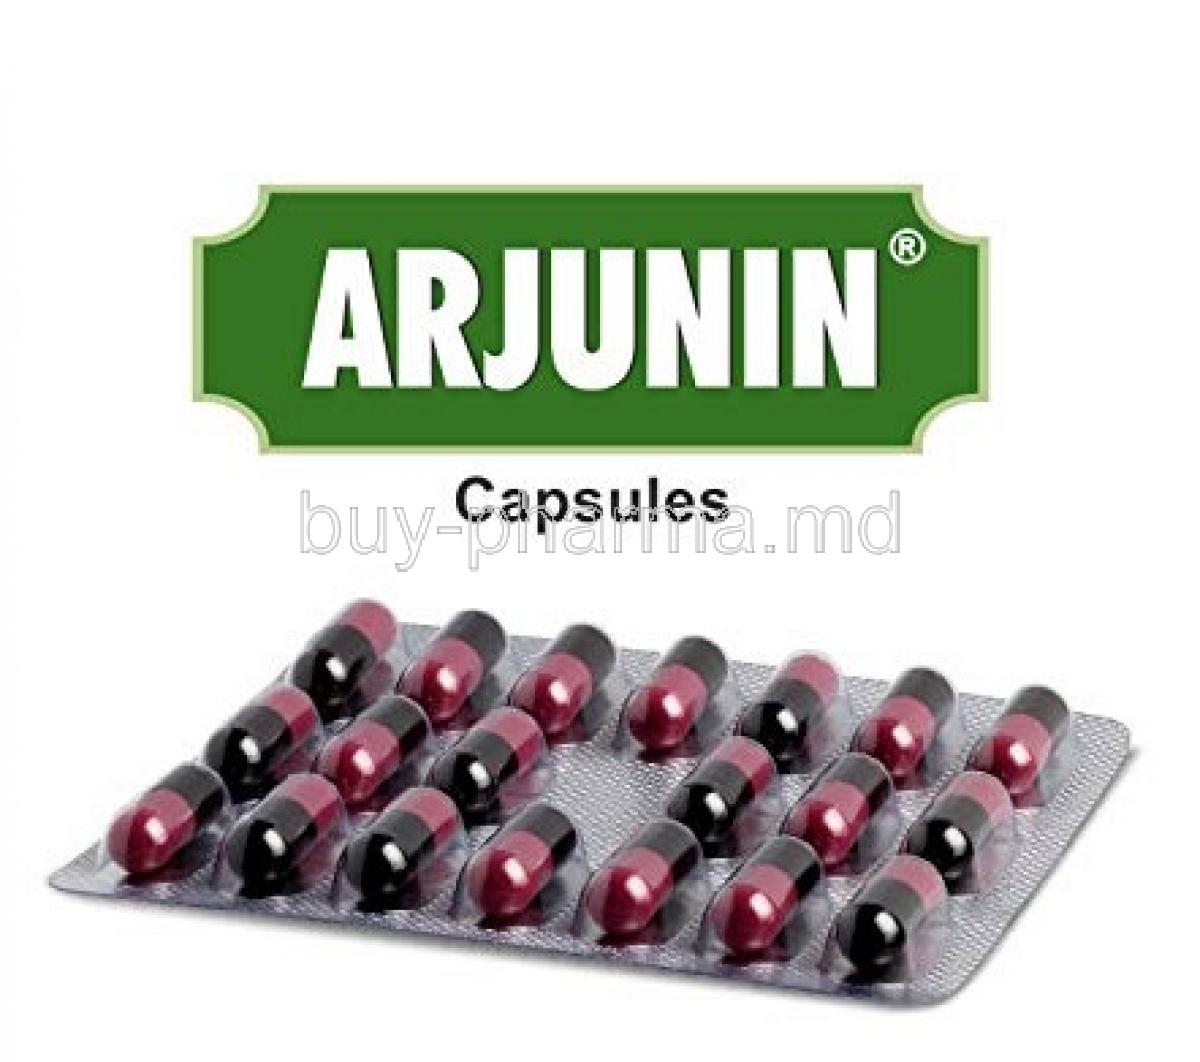 Arjunin box and capsules